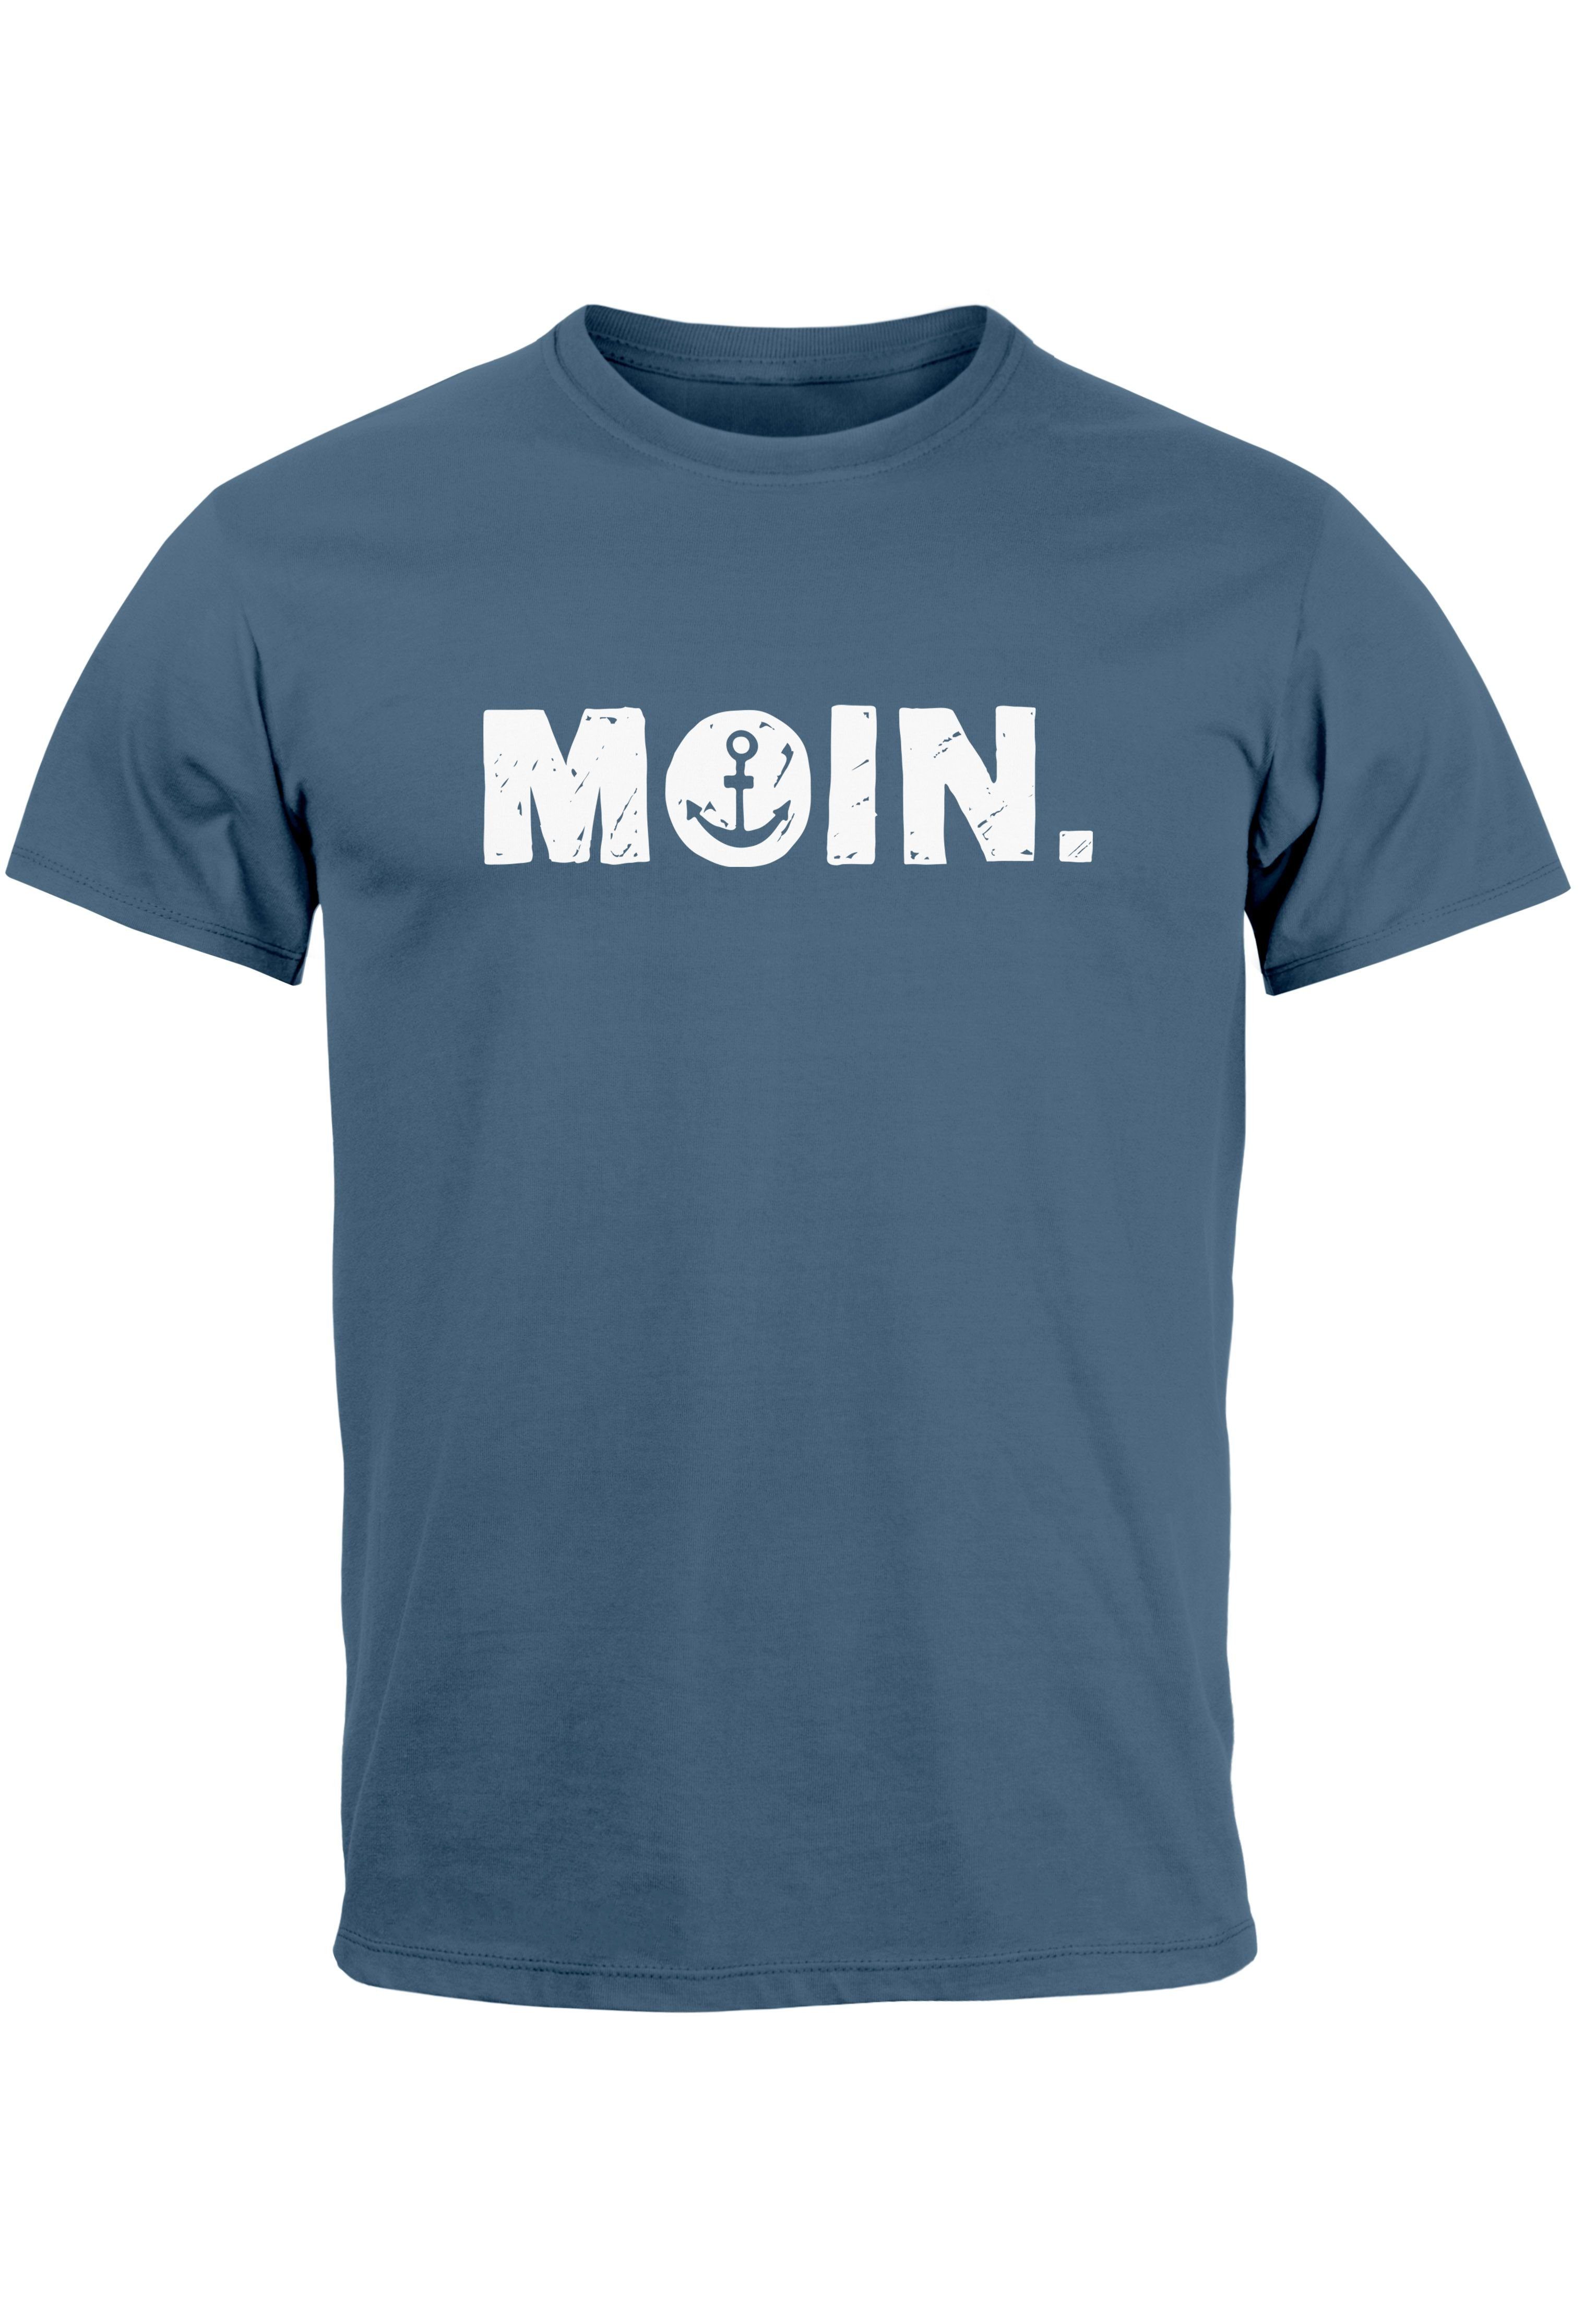 Print-Shirt Moin Print Dialekt Fash Neverless T-Shirt blue mit Herren Print Schriftzug denim Hamburg Anker Norden